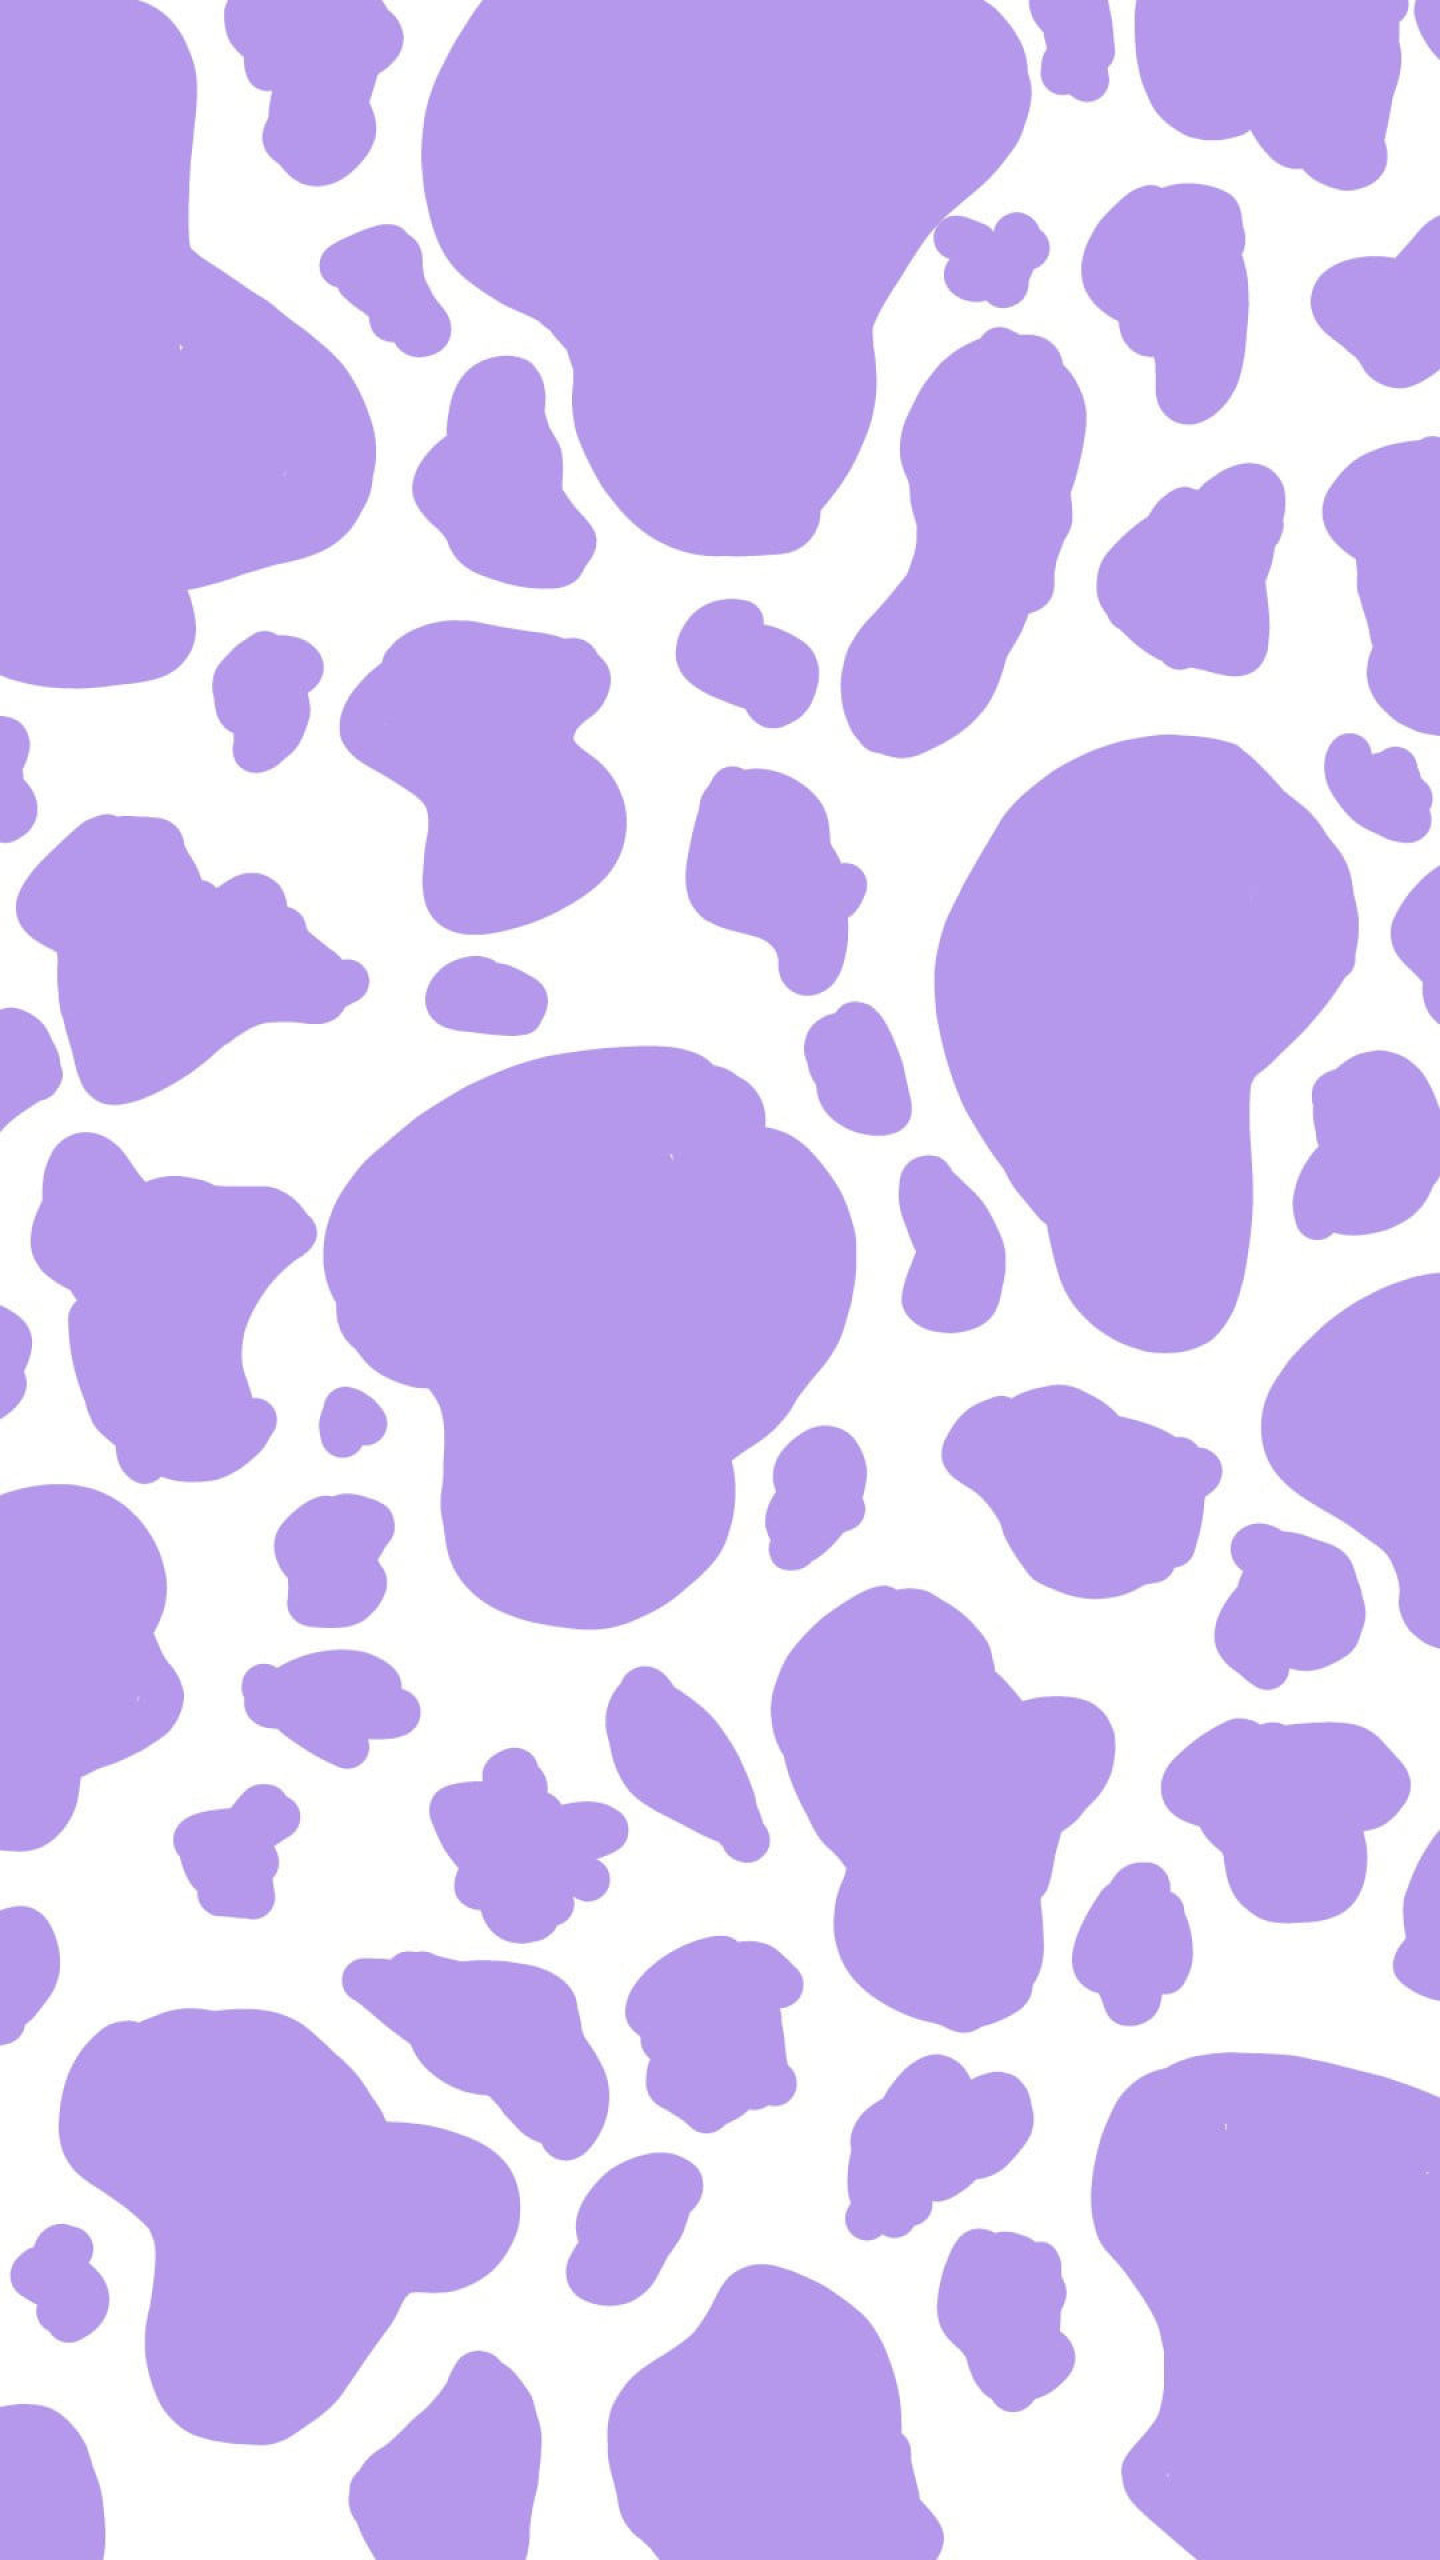 Принт коровы фиолетовый